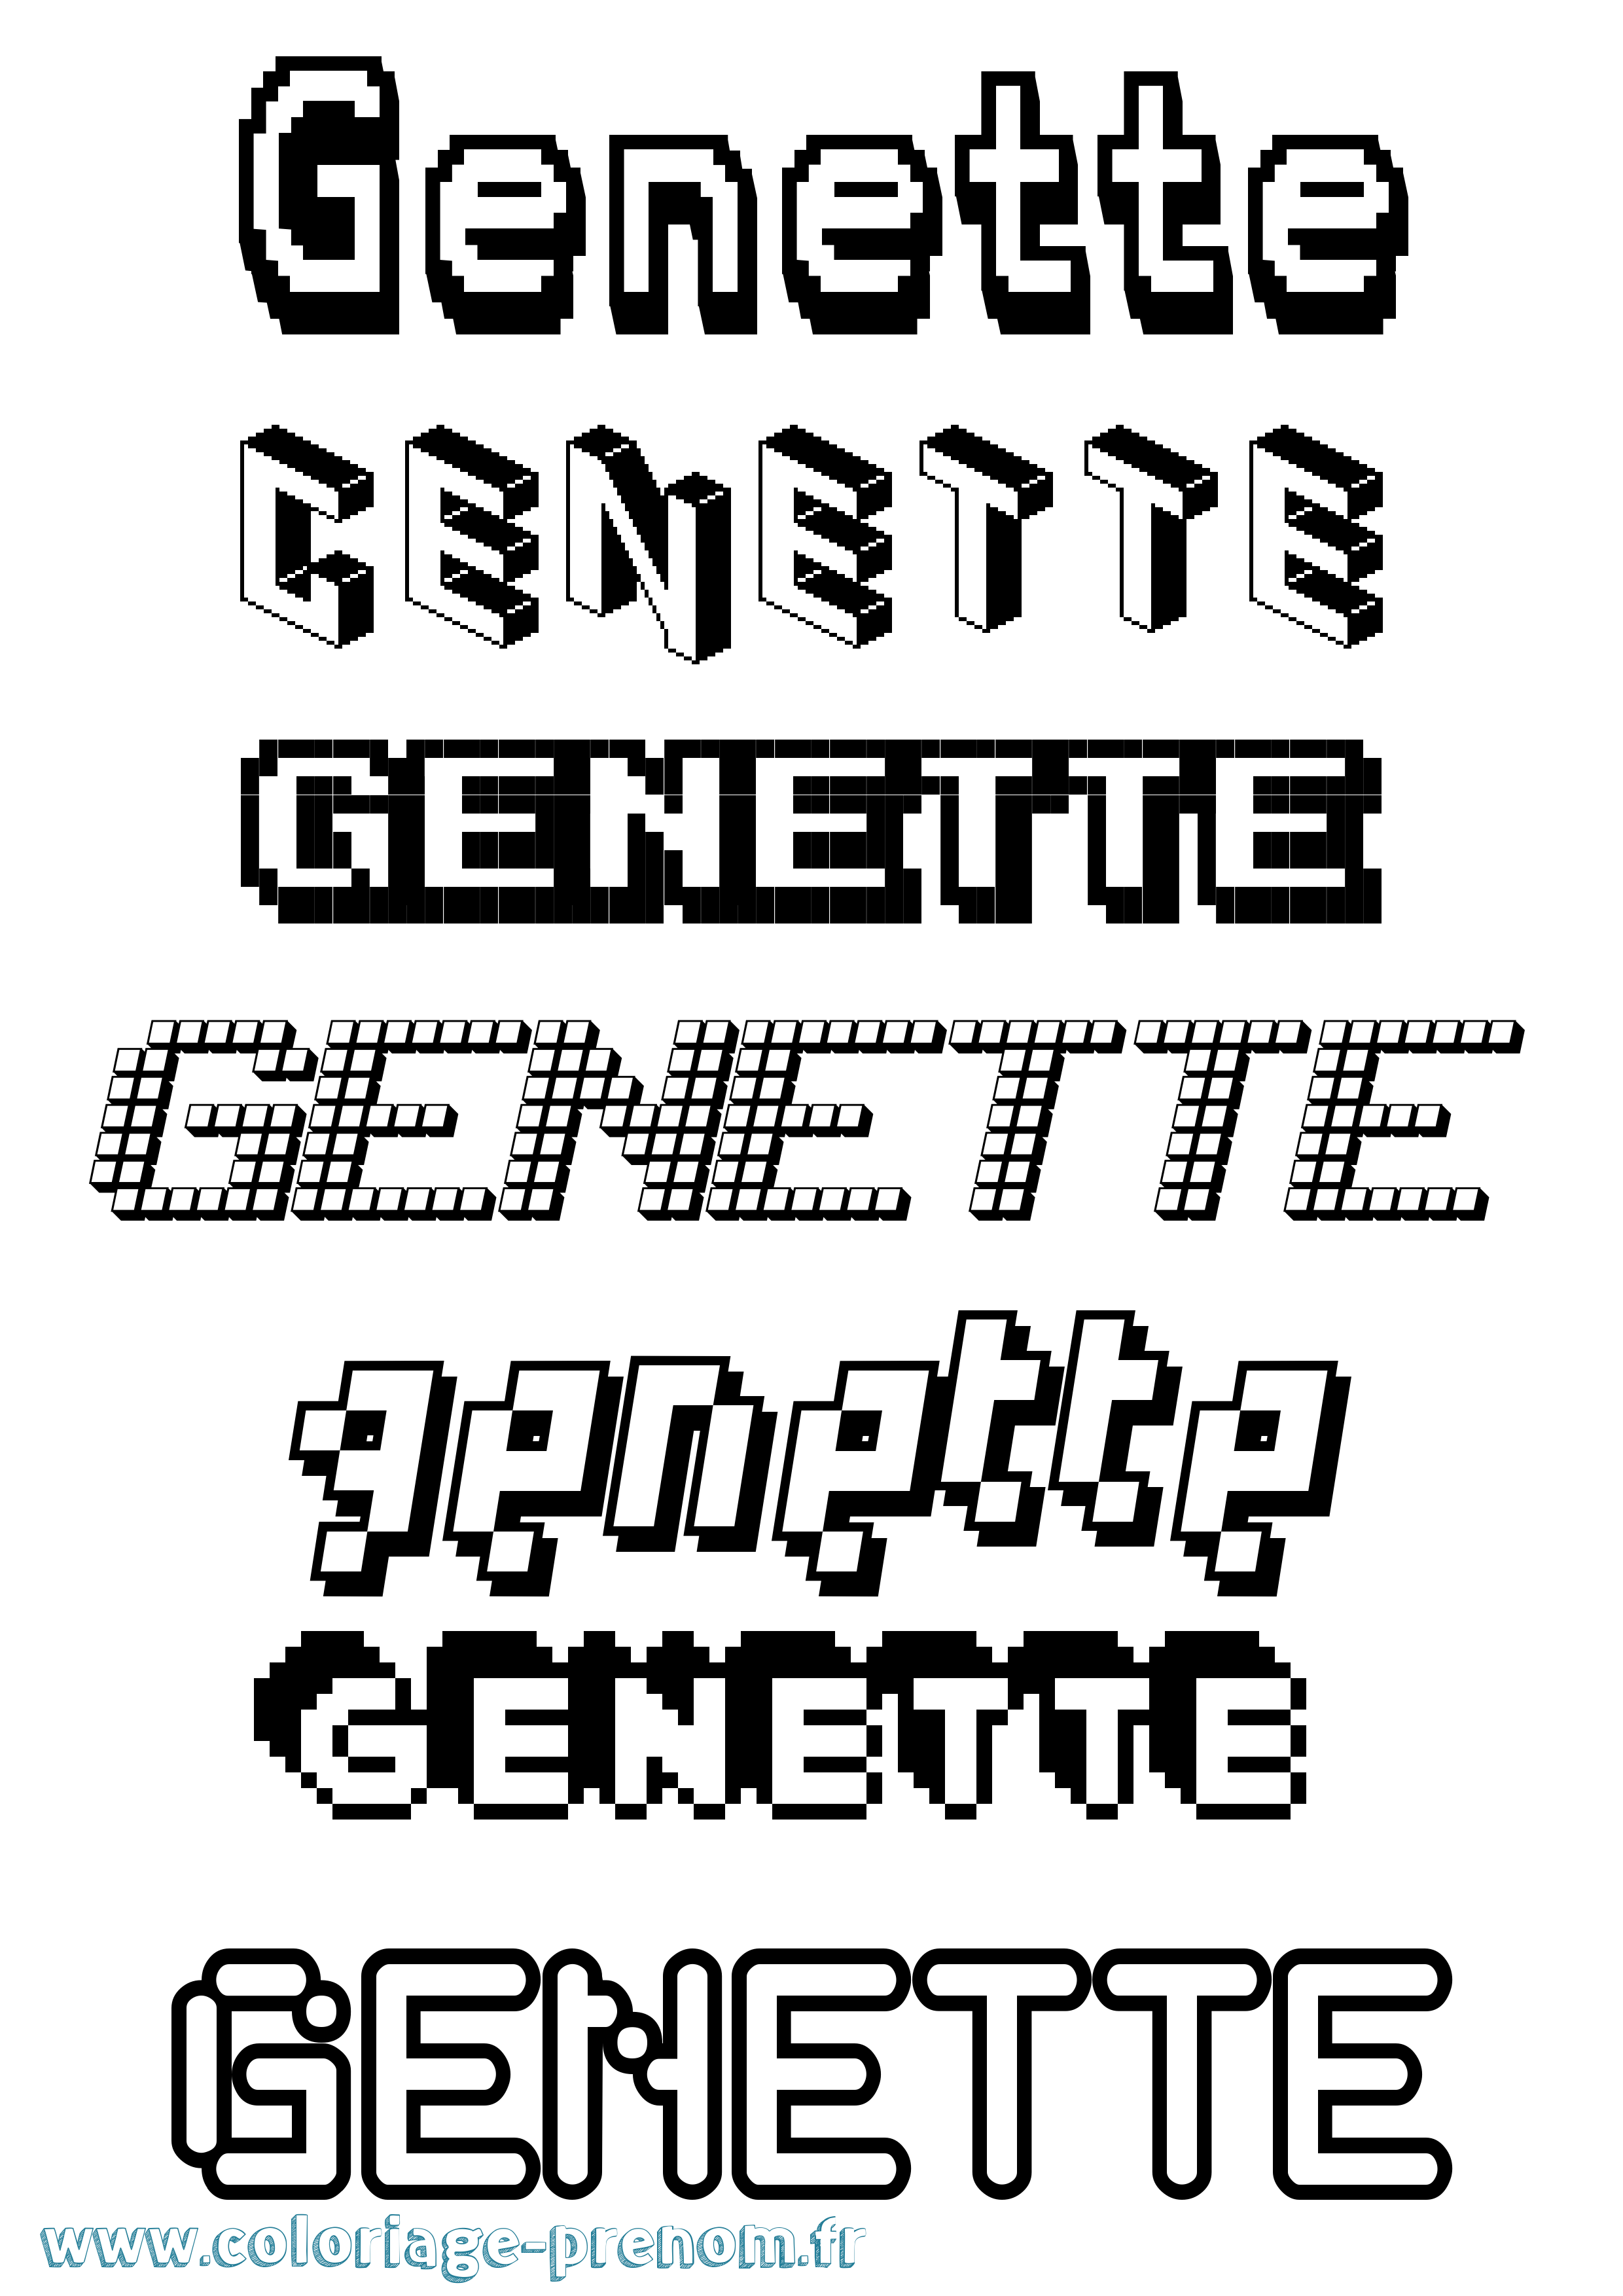 Coloriage prénom Genette Pixel